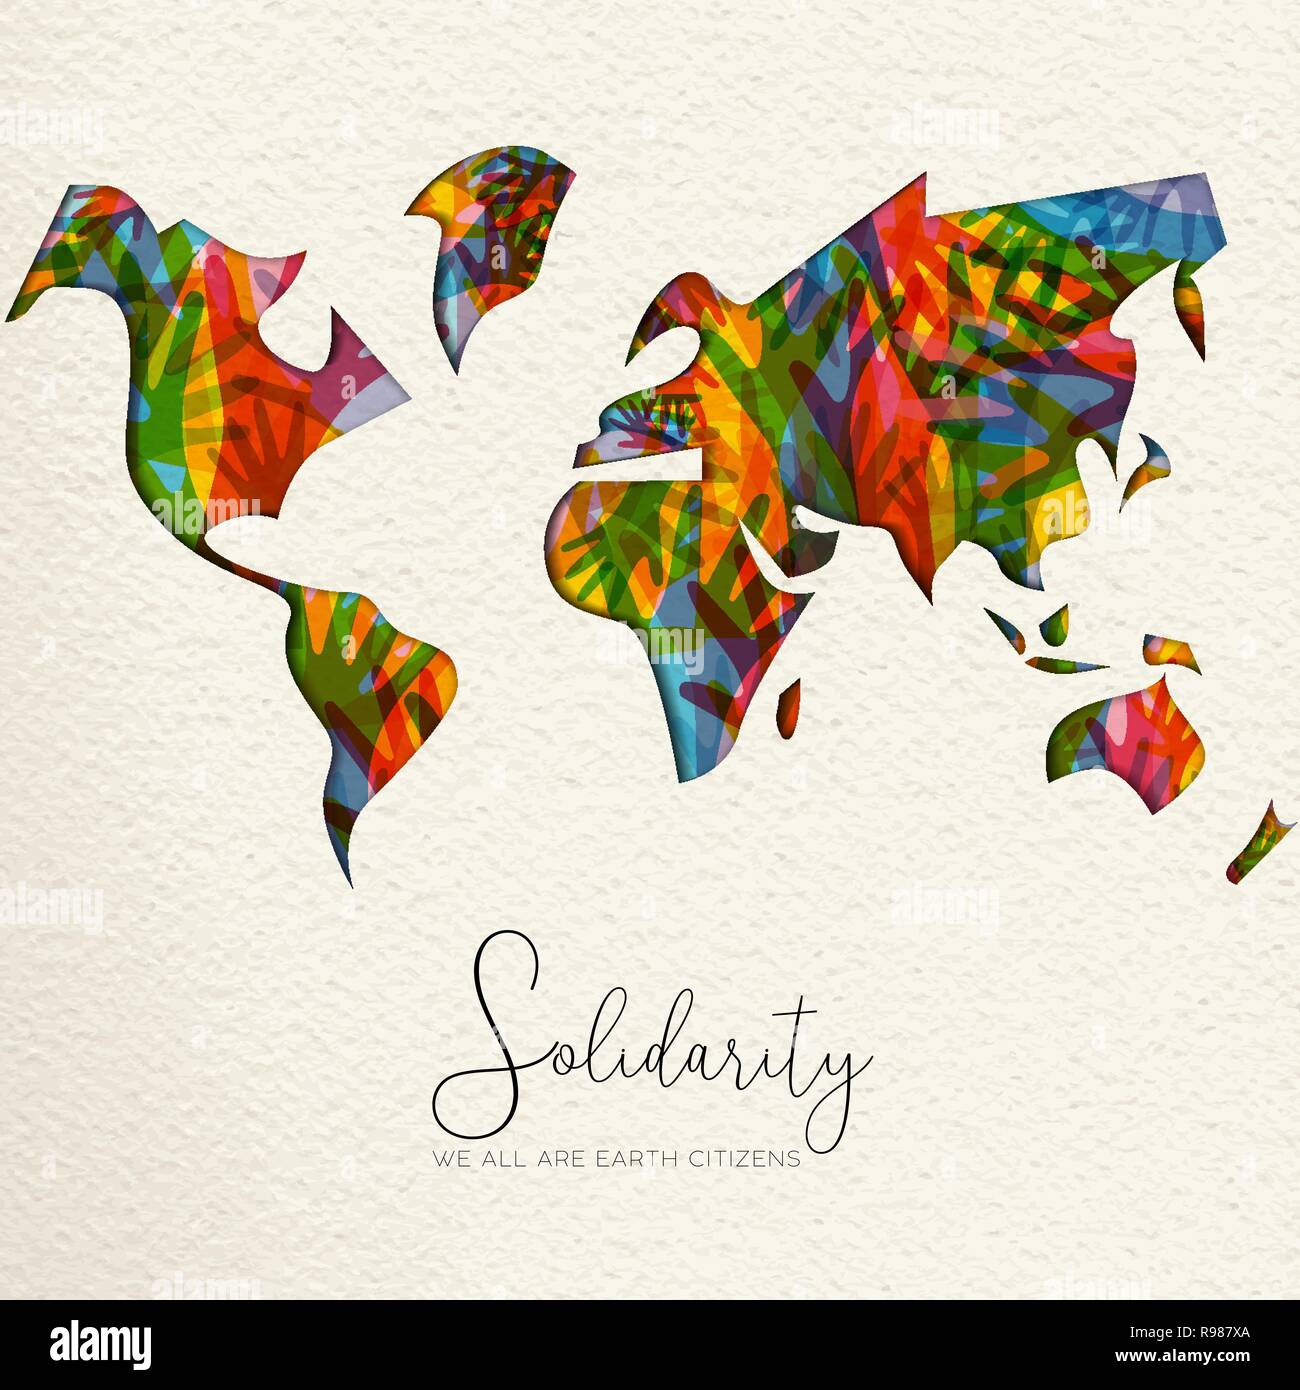 Internationaler Tag der Solidarität Grußkarte mit Weltkarte und diverse Hände aus verschiedenen Kulturen, die sich gegenseitig helfen für die Hilfe, socia Stock Vektor